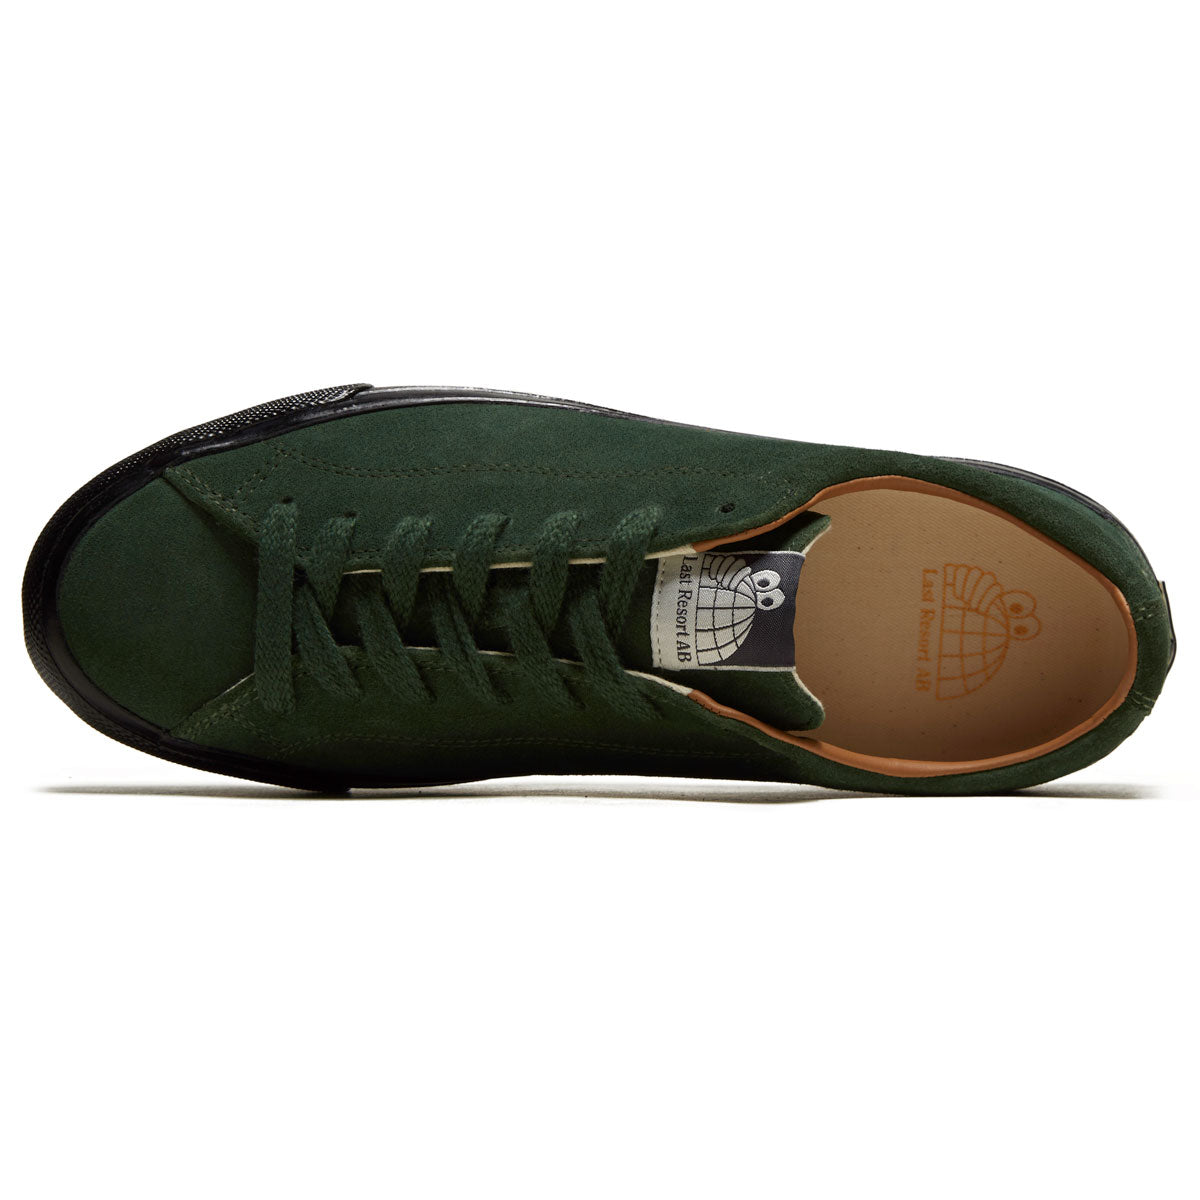 Last Resort AB VM003 Suede Lo Shoes - Dark Green/Black, – CCS